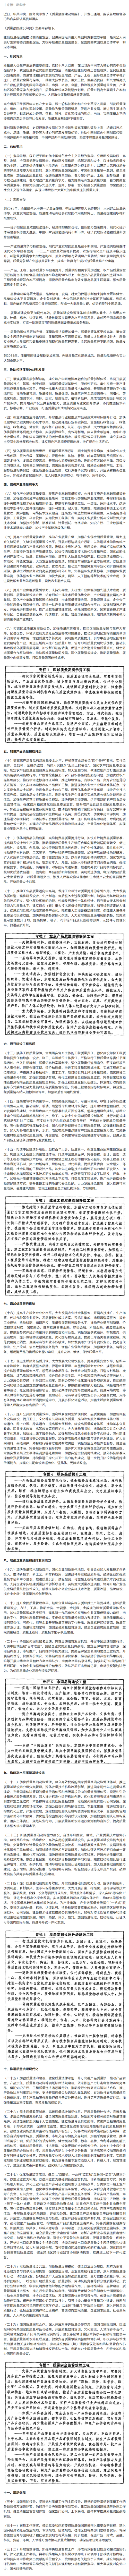 中共中央 国务院印发《质量强国建设纲要》.png